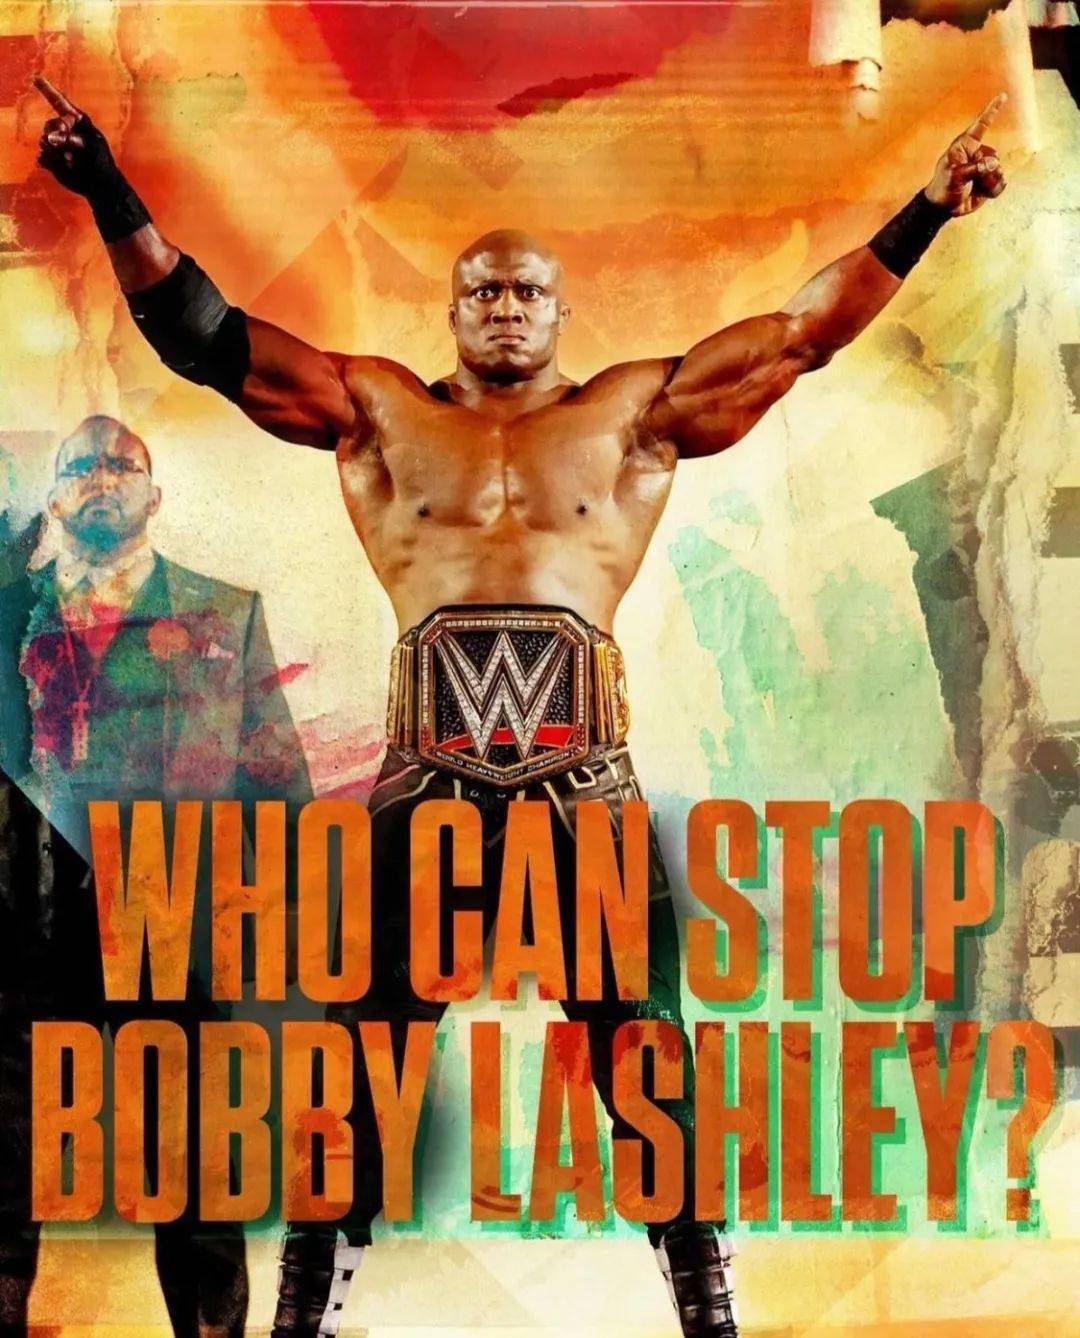 不忘初心,wwe冠军鲍比莱斯利希望更多被埋没选手闯进摔角狂热!